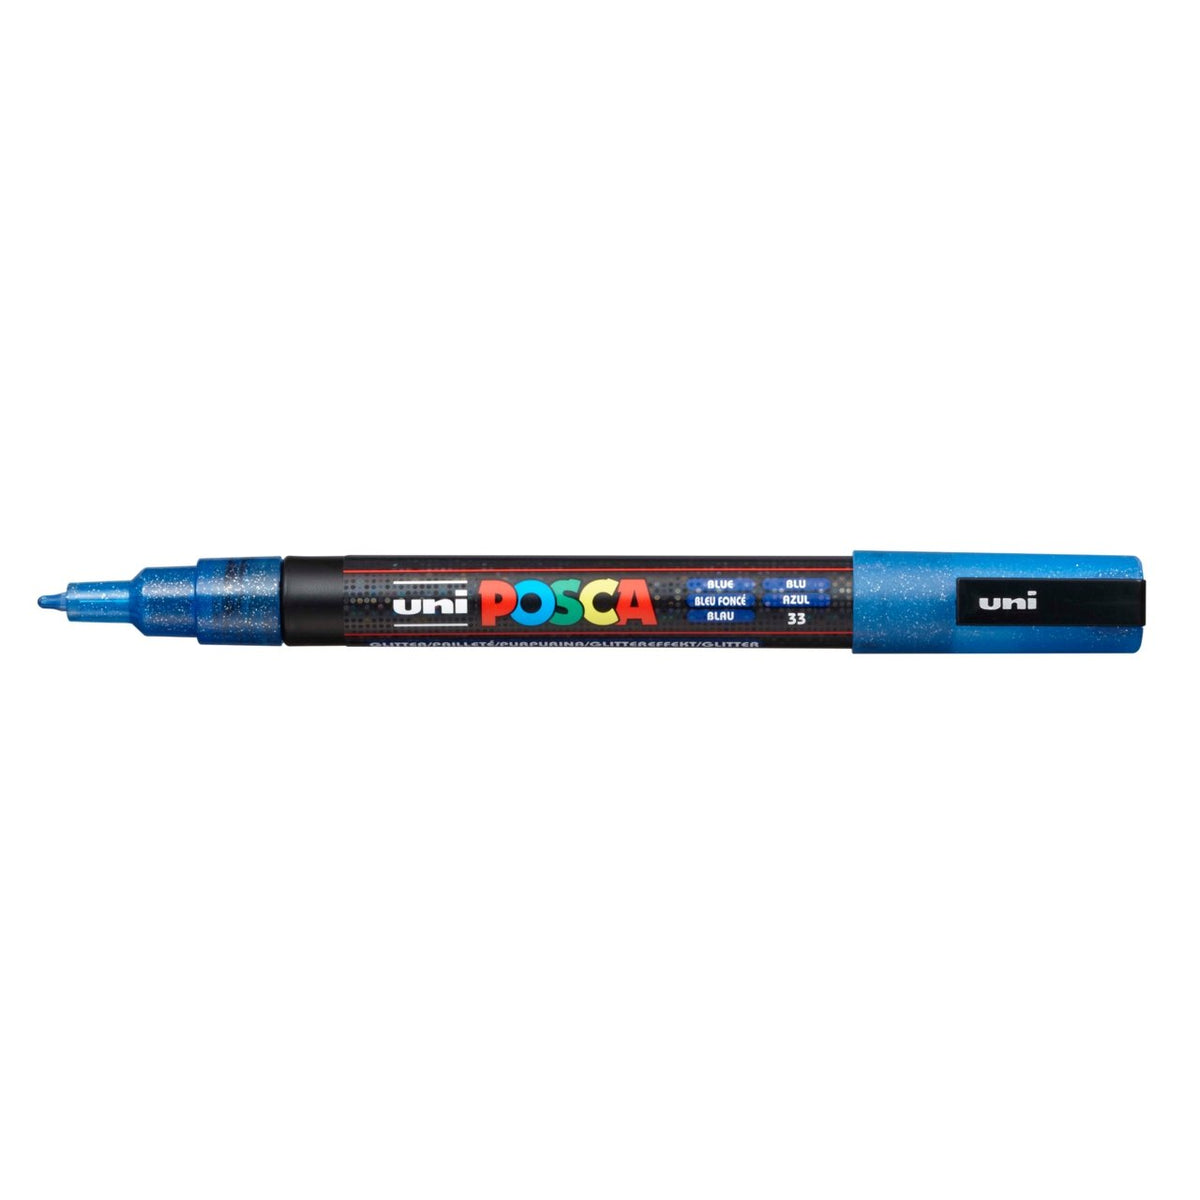 Uni POSCA - PC-3M Art Marker Paint Pens - 4 Pack Wallet - Blue Tones